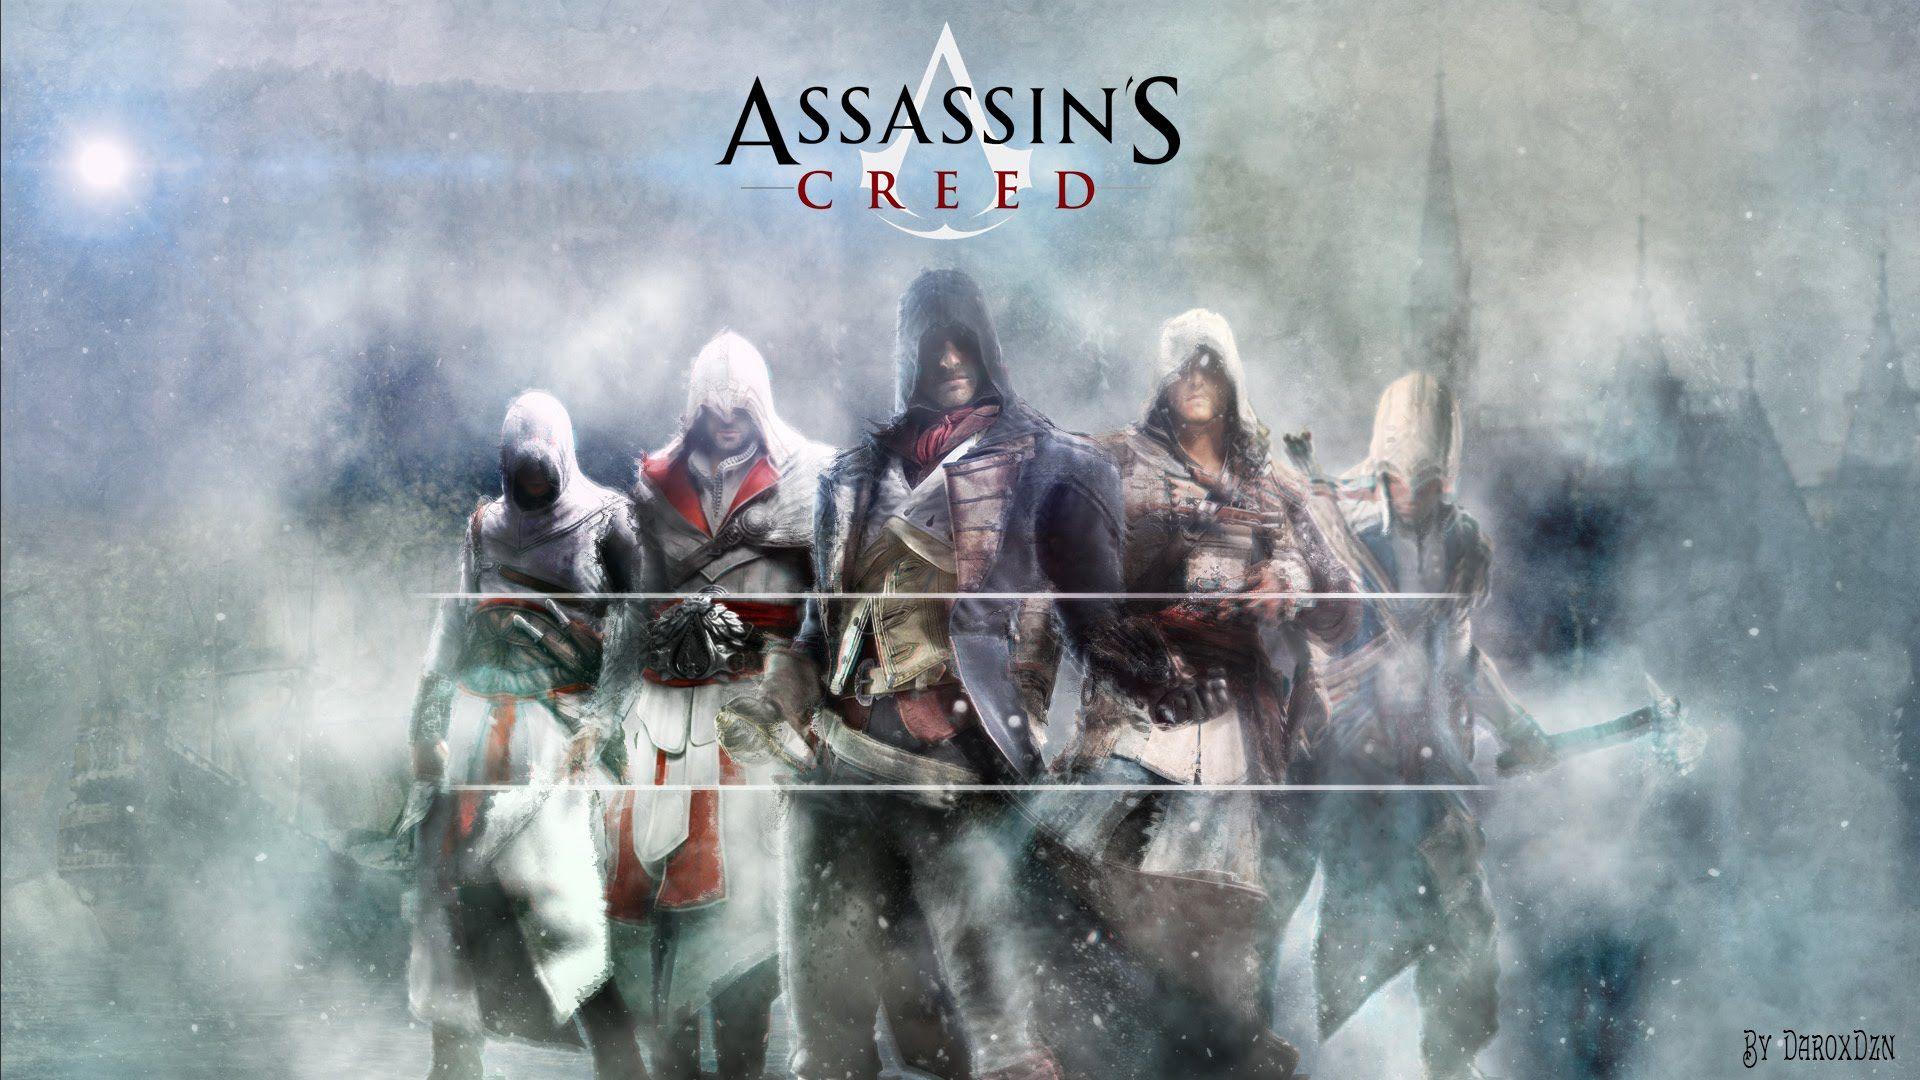 Assassin's Creed Wallpaper 1080p Full HD [FREE DOWNLOAD]. DaroxDzn